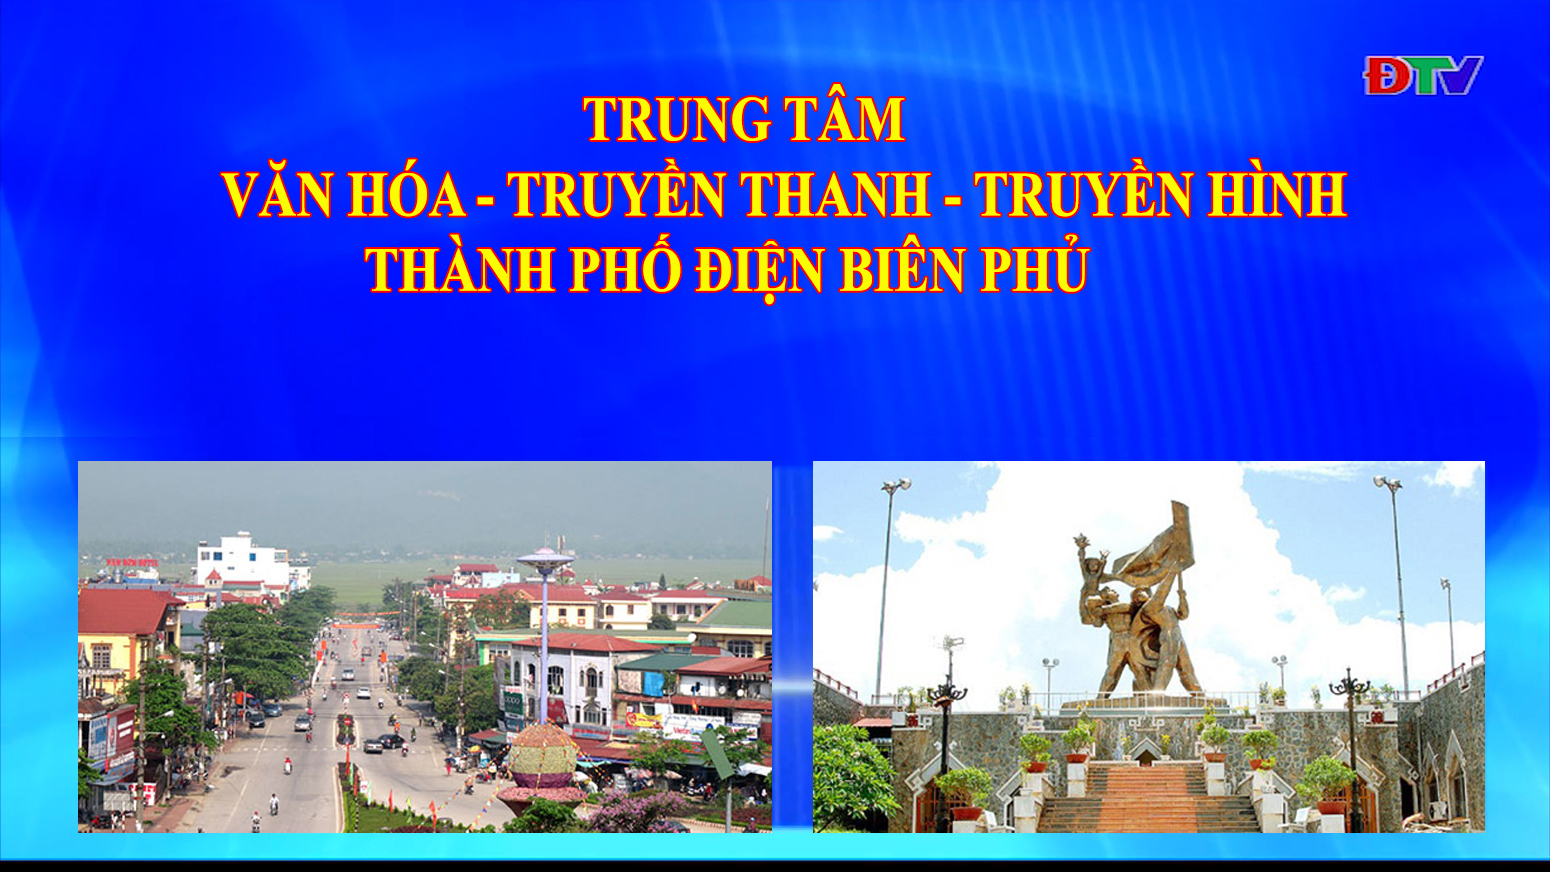 Trung tâm VH-TTTH thành phố Điện Biên Phủ (Ngày 21-6-2022)